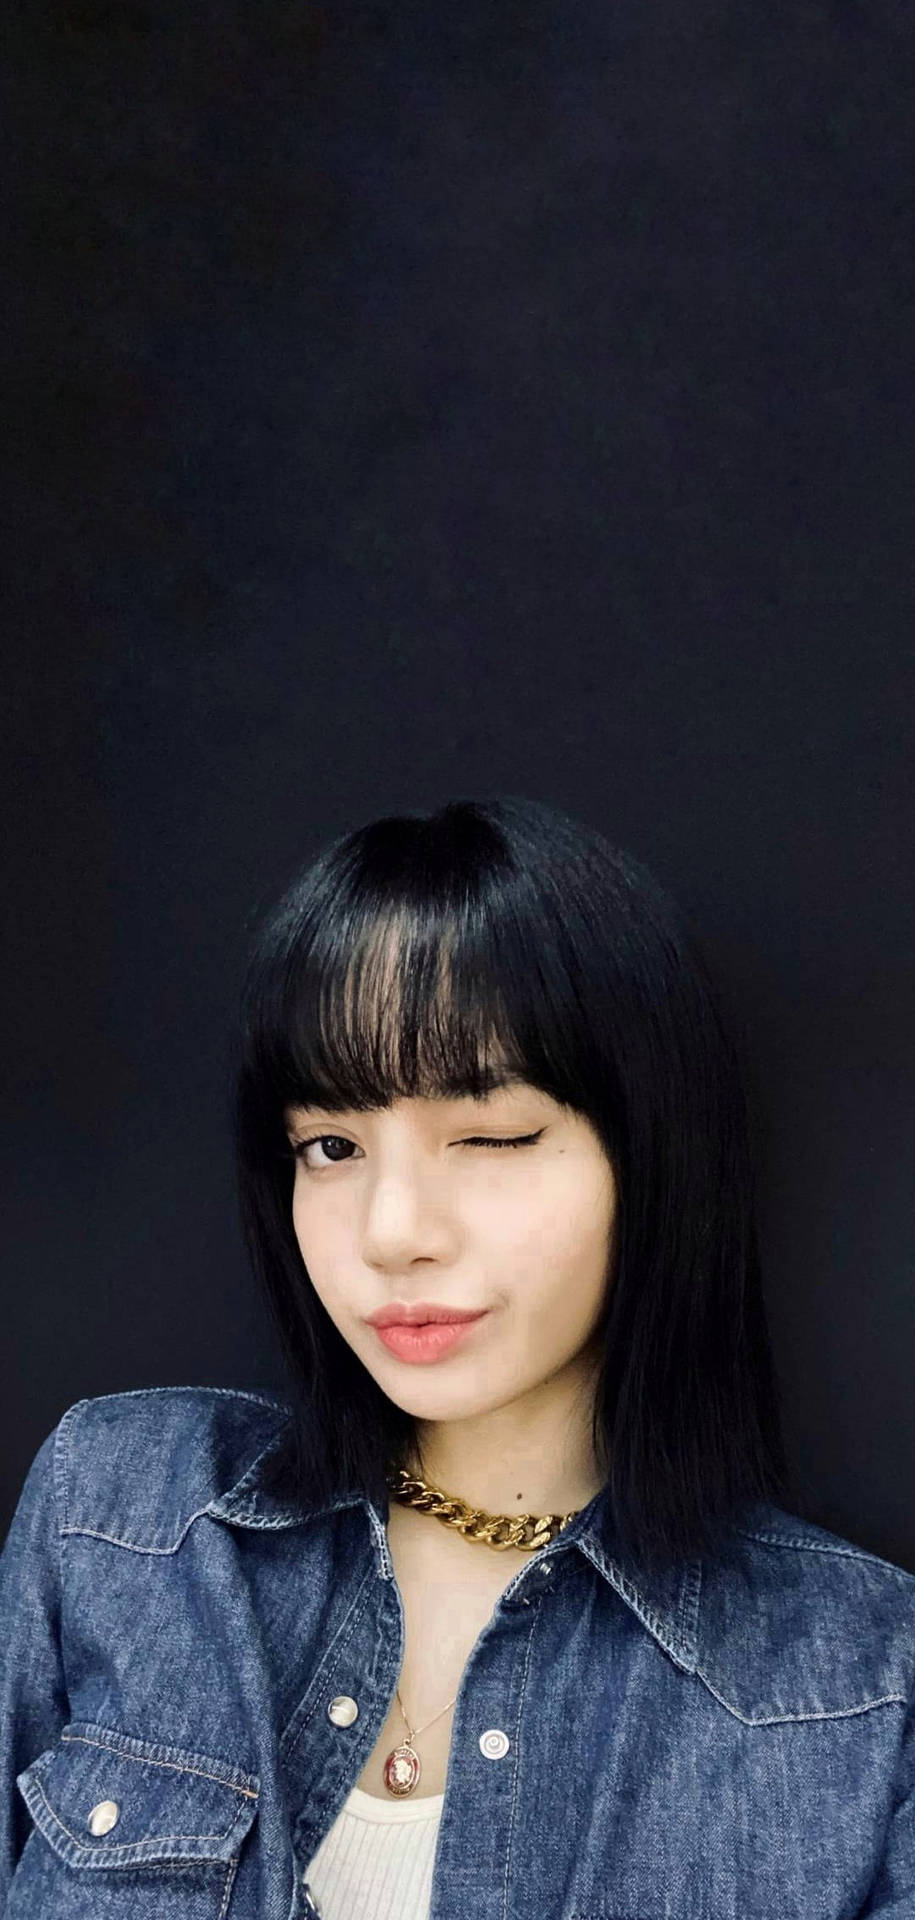 Lisa Blackpink In Alta Definizione, Selfie Internazionale Su Weibo. Sfondo